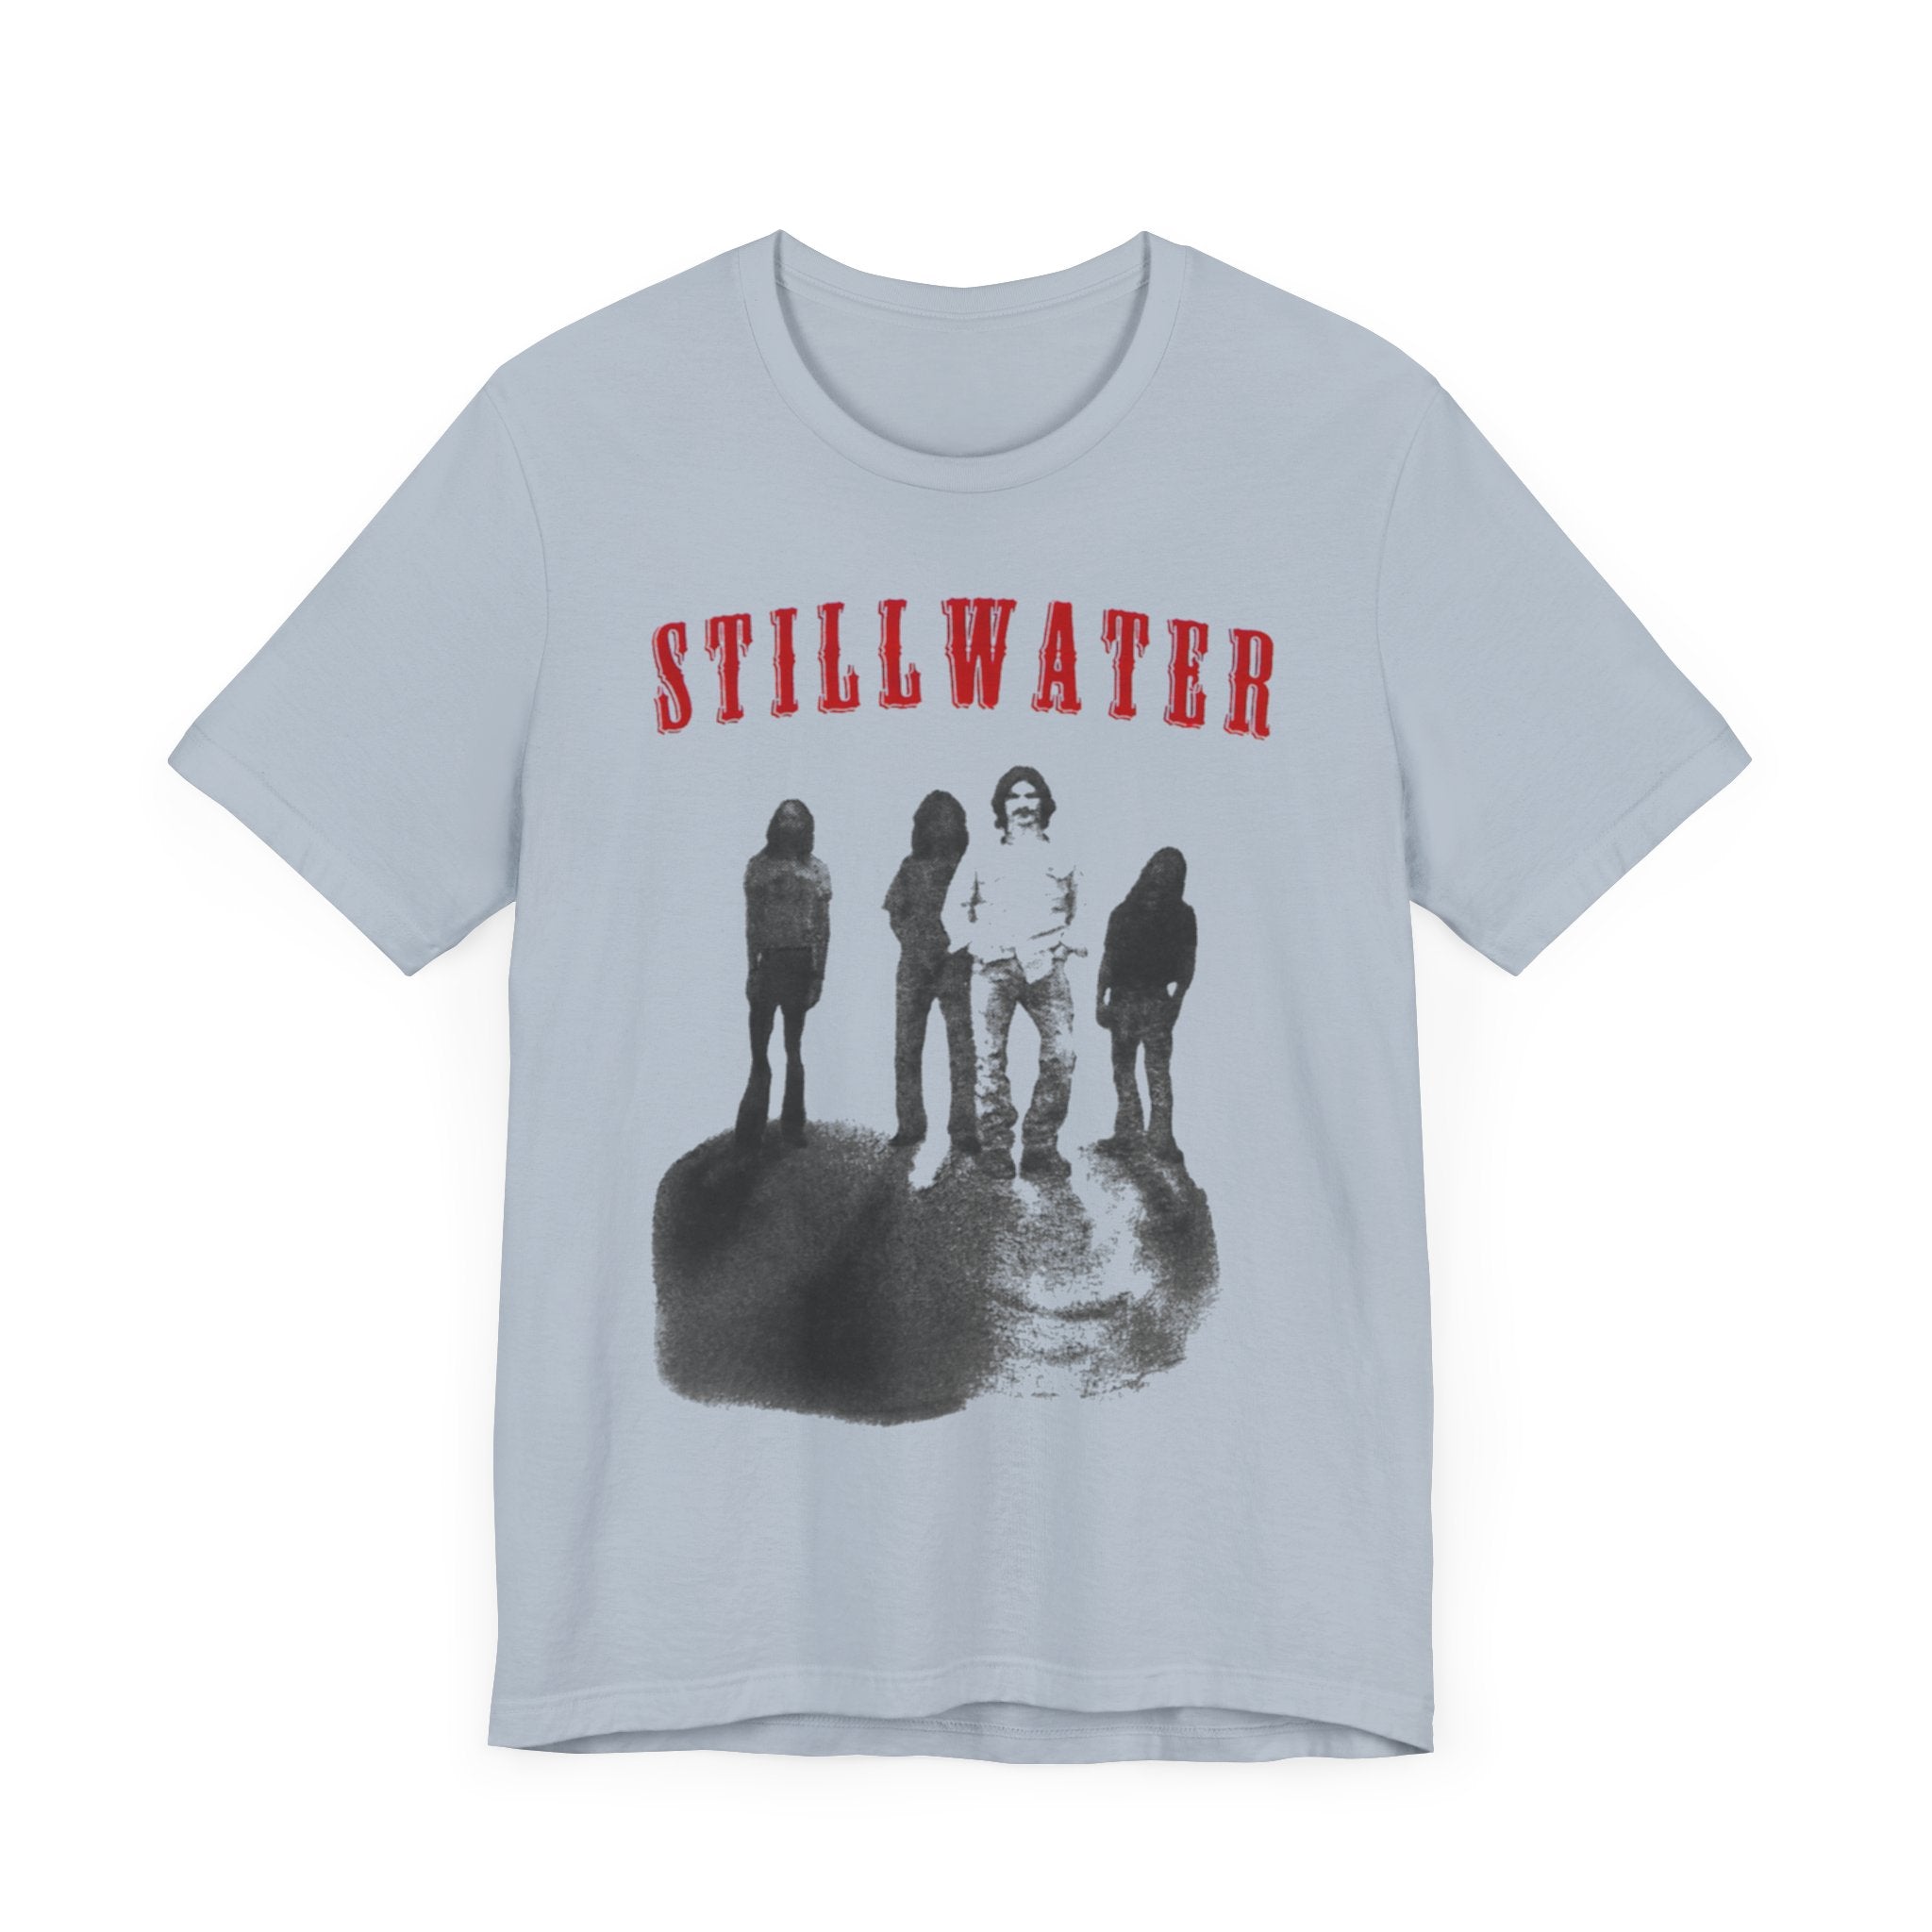 Stillwater: Rocking the Stage